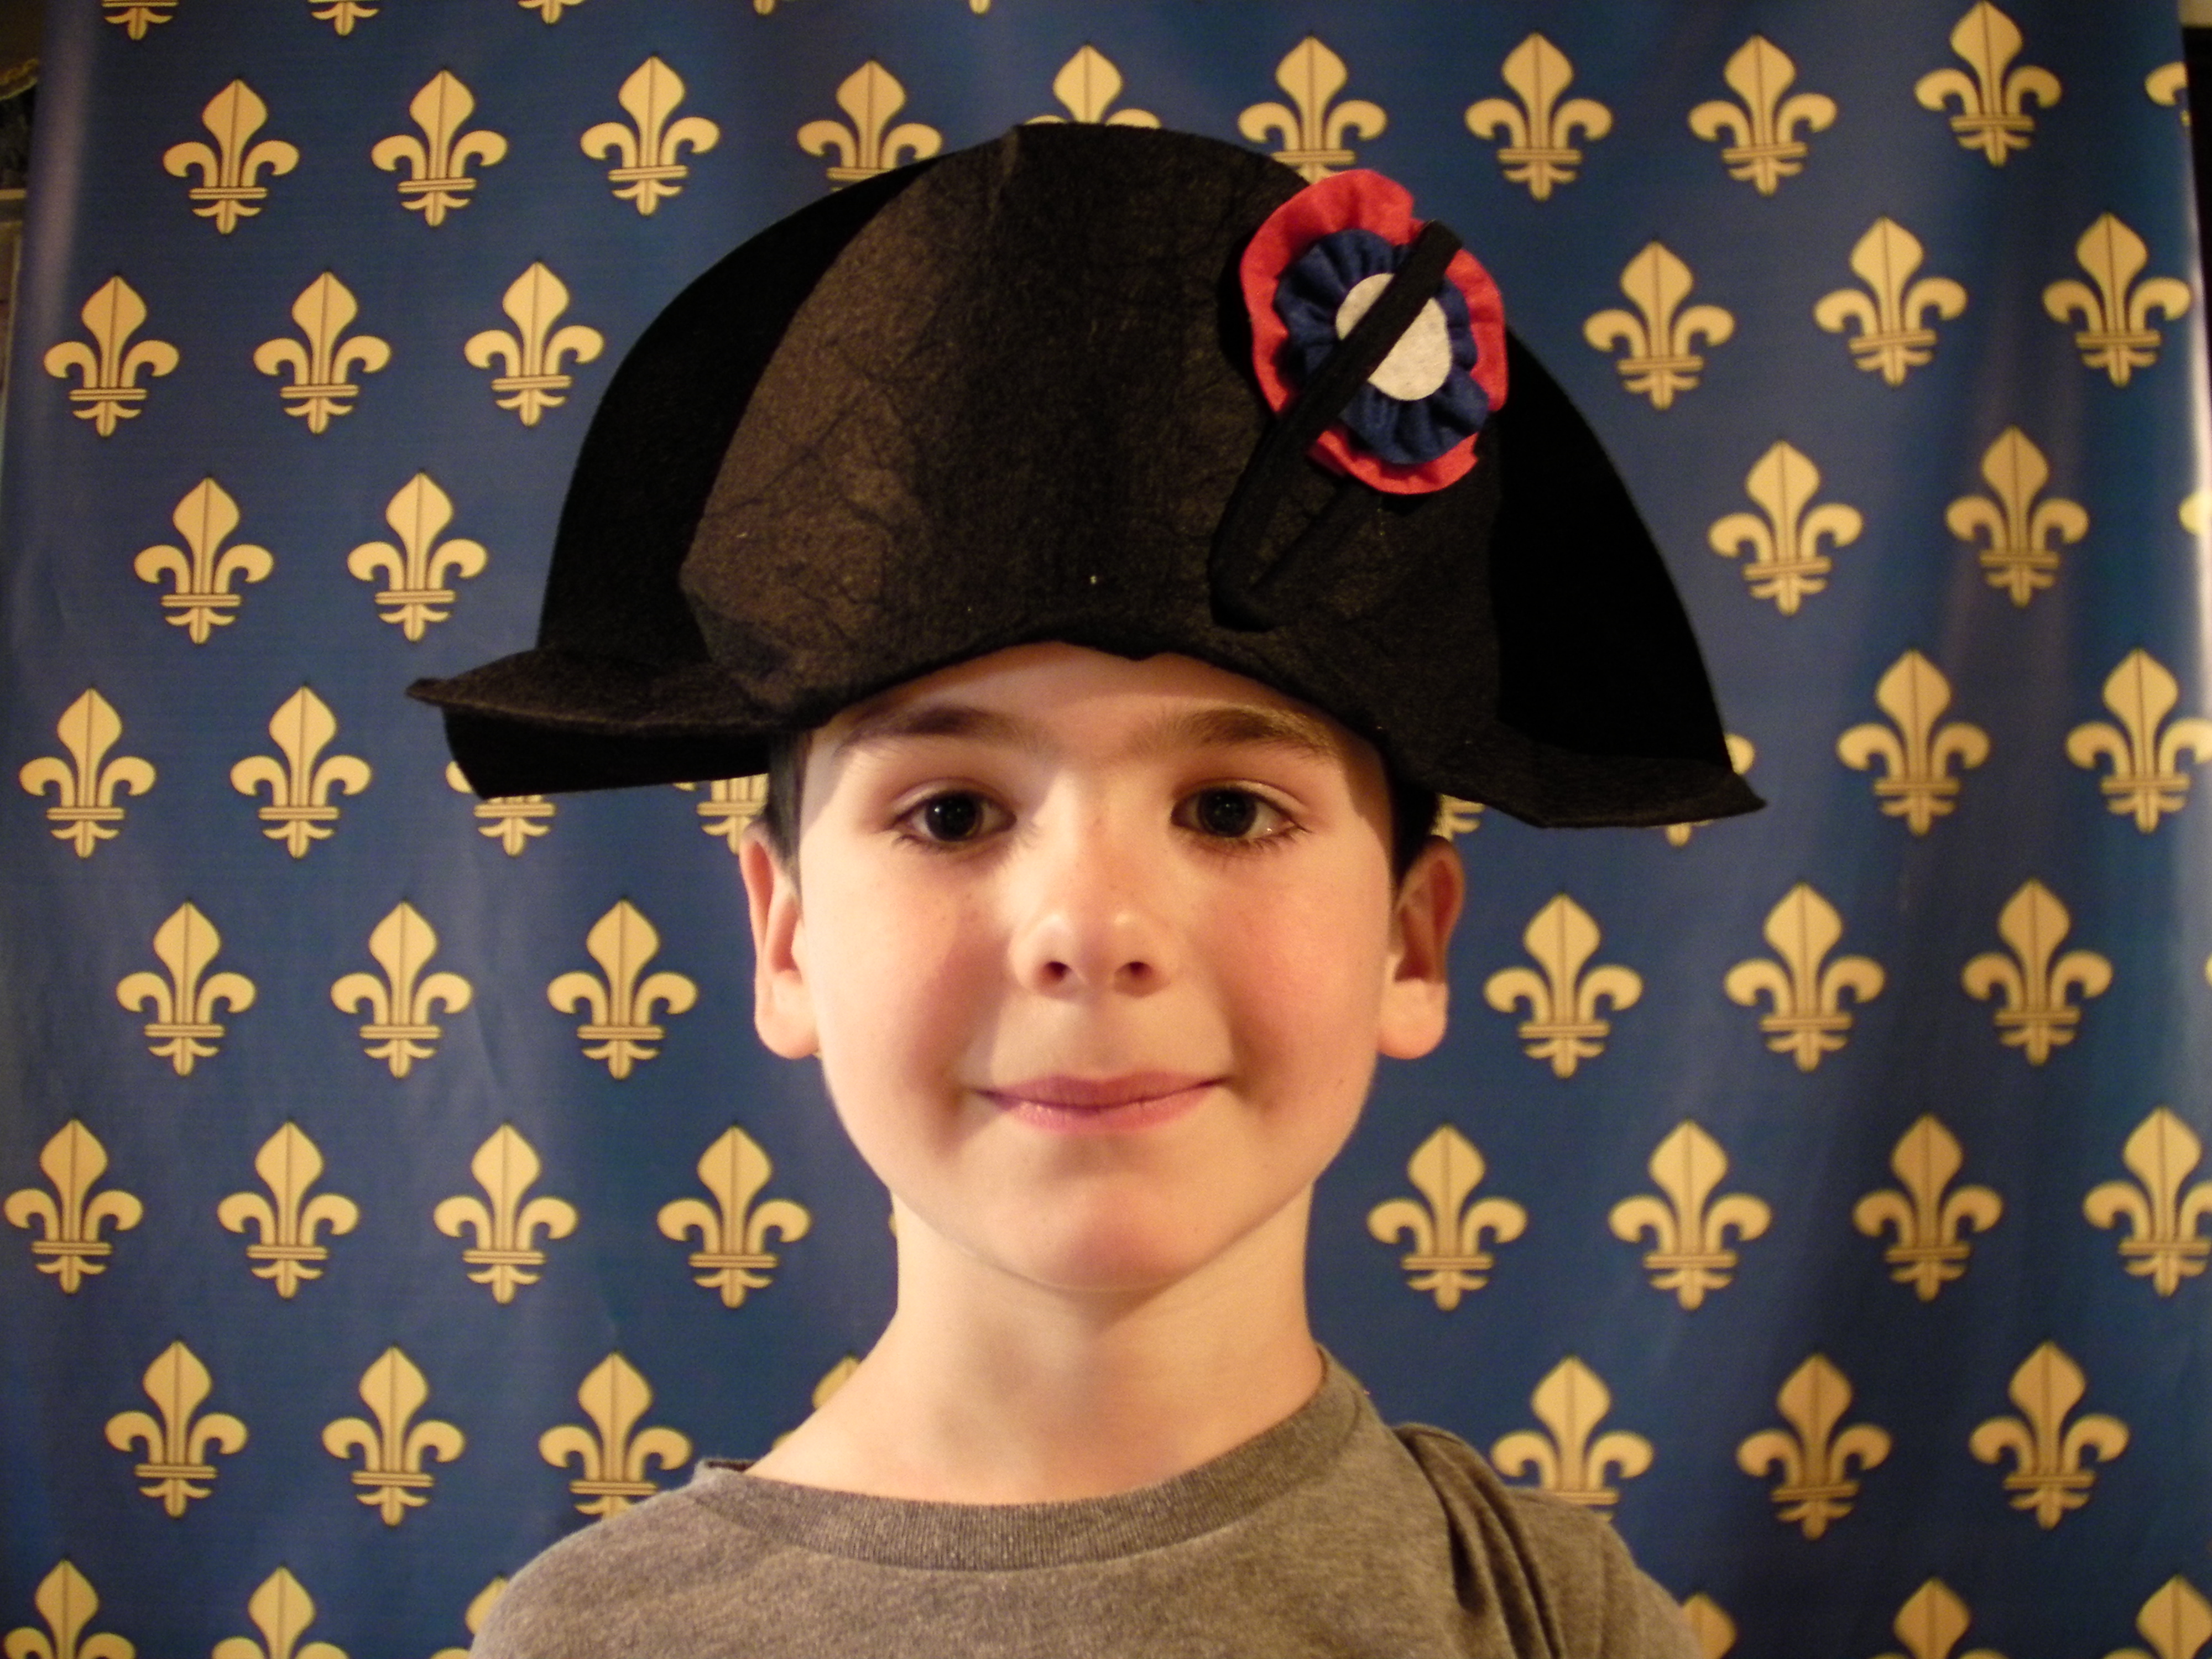 Chapeau de Napoléon